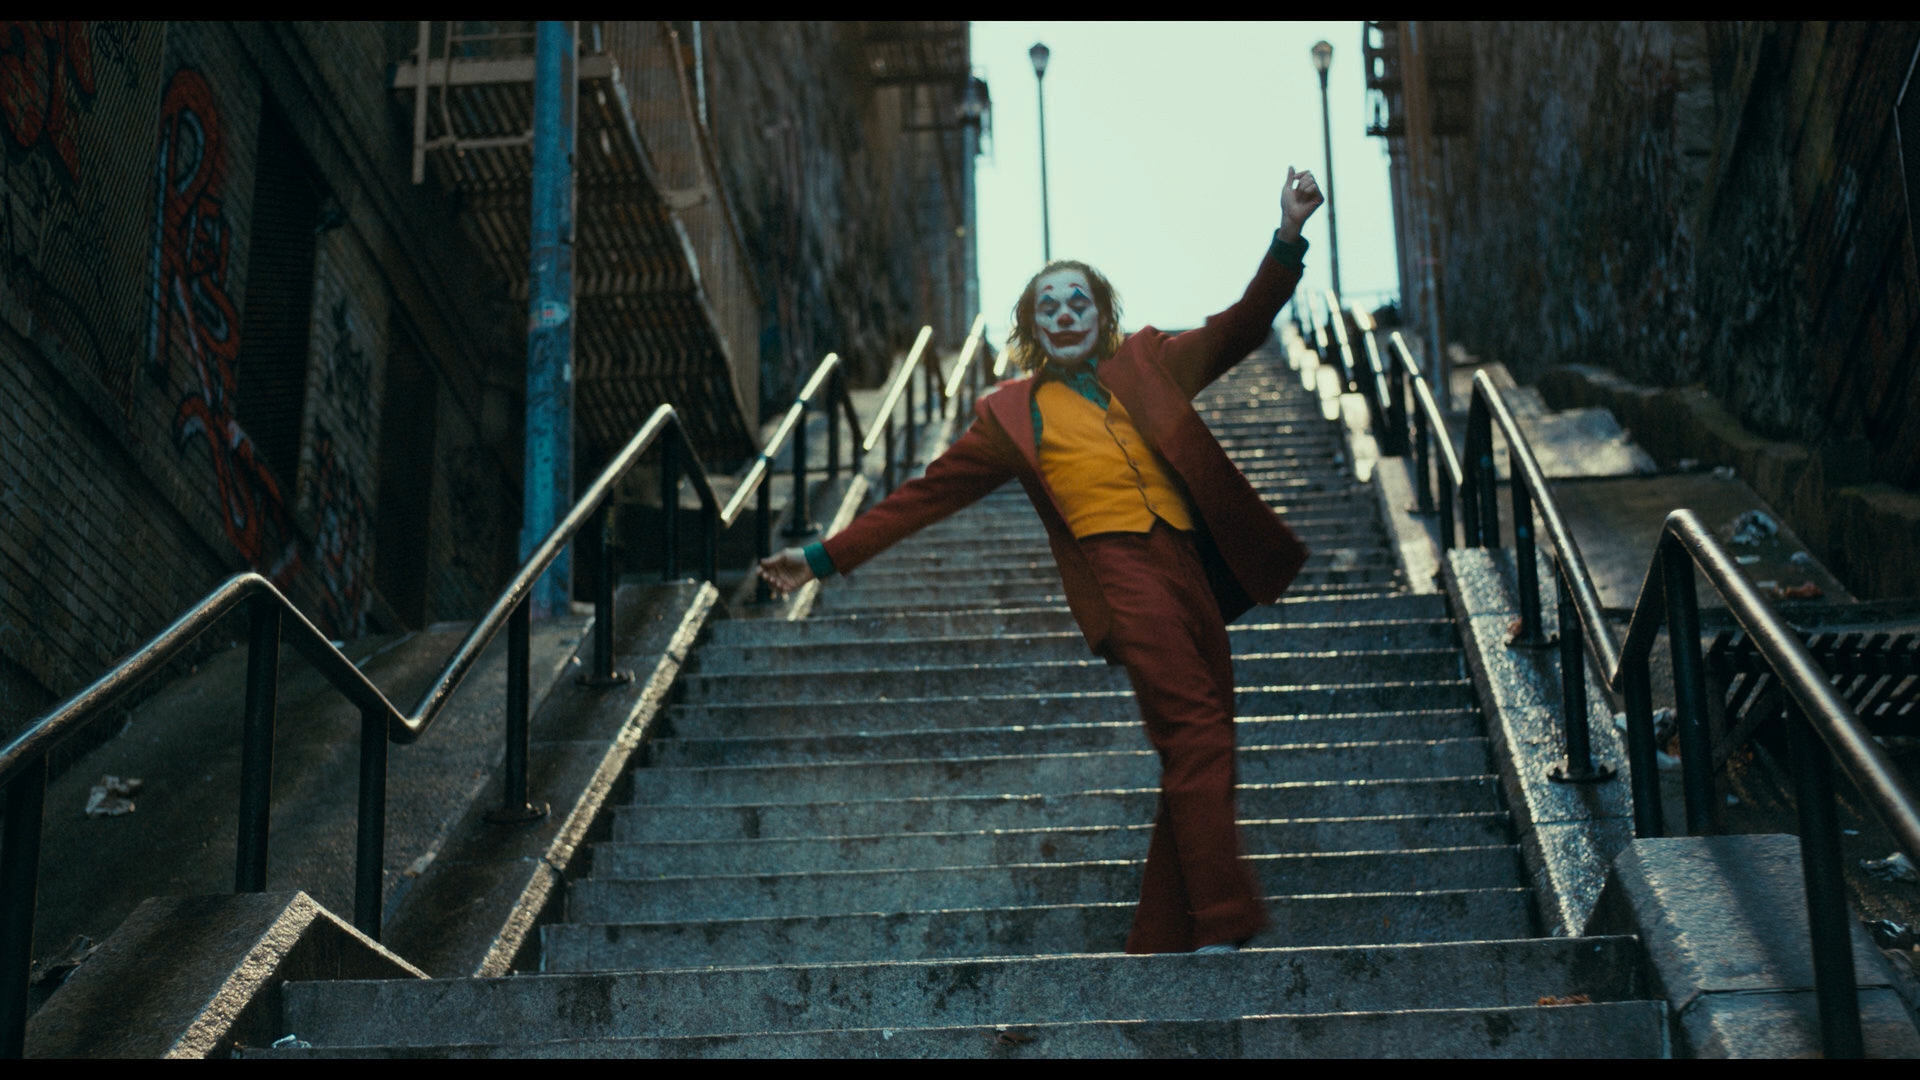 People 1920x1080 Joker (2019 Movie) Joker Joaquin Phoenix men film stills movies DC Comics makeup dancing stairs